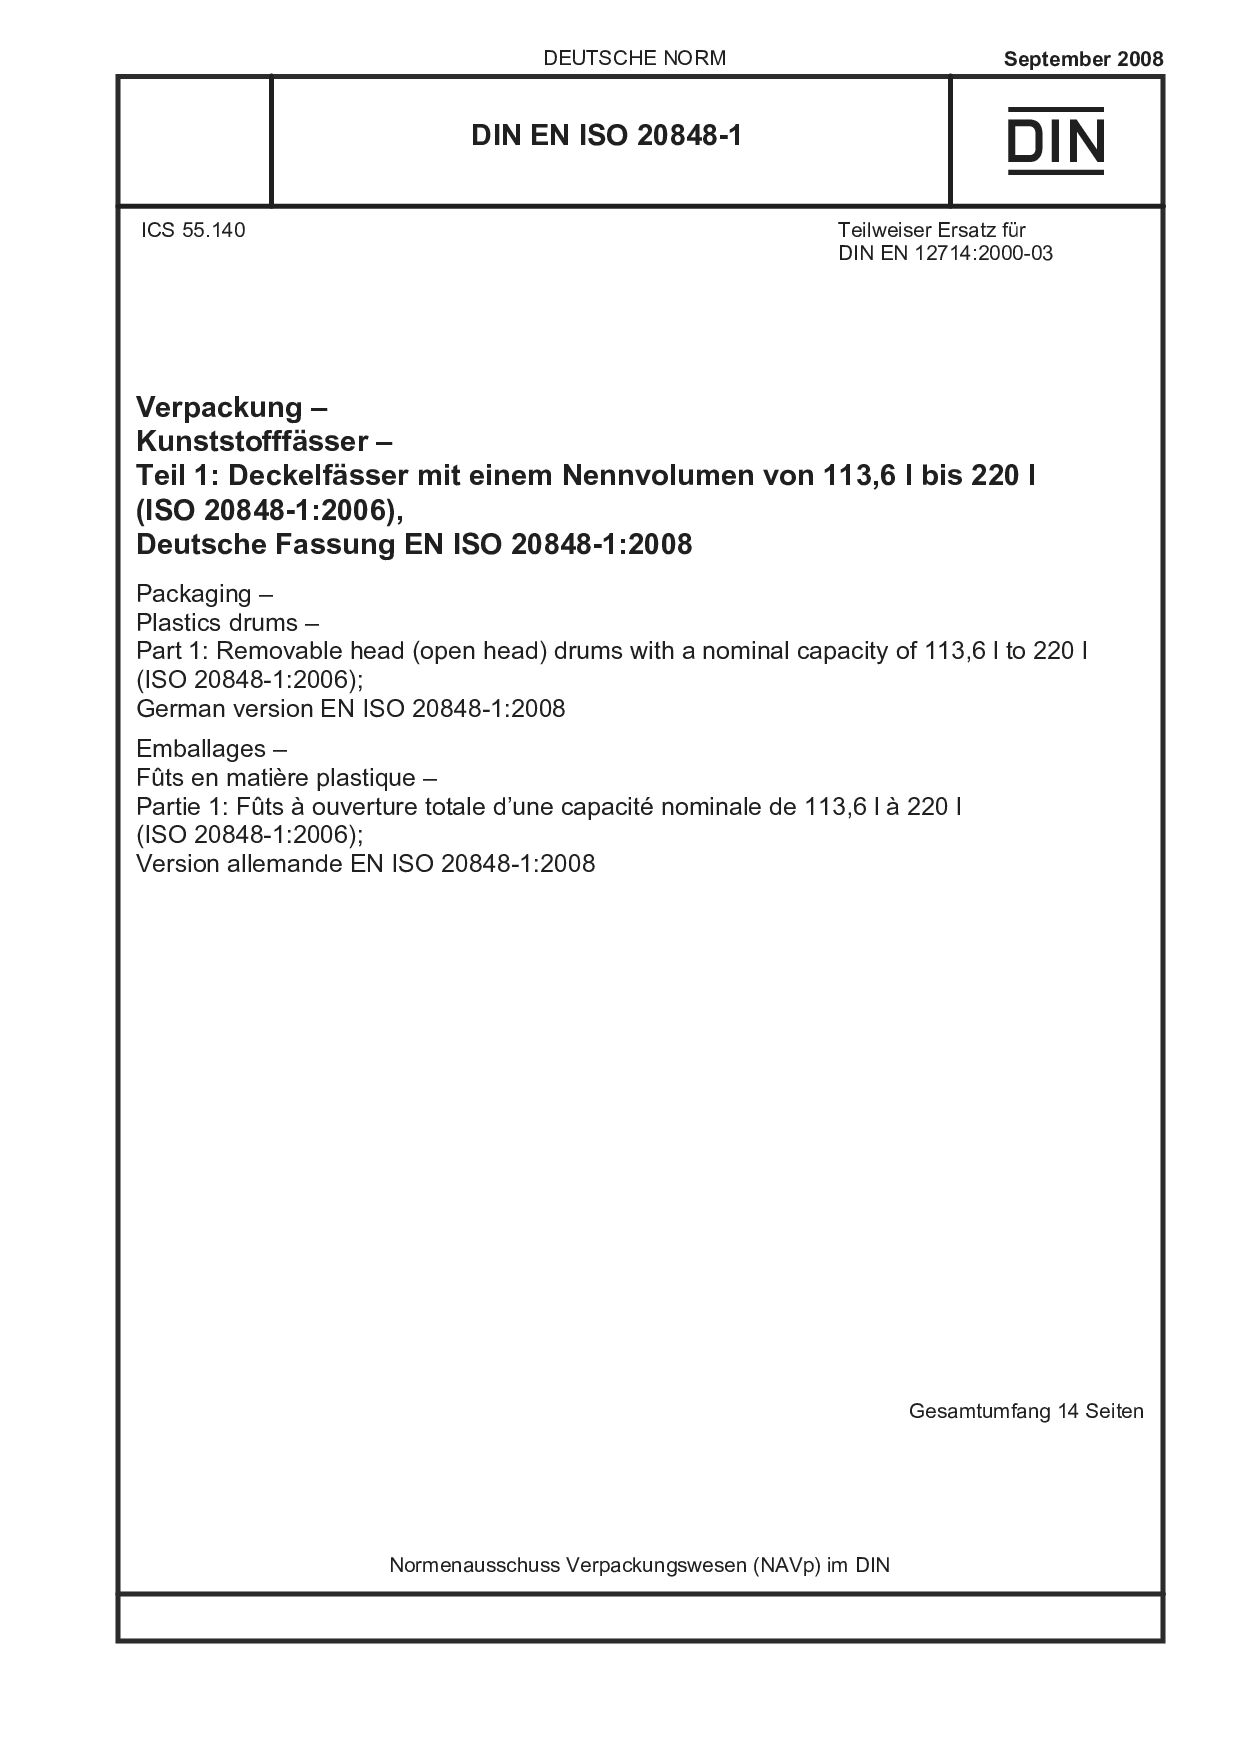 DIN EN ISO 20848-1:2008-09